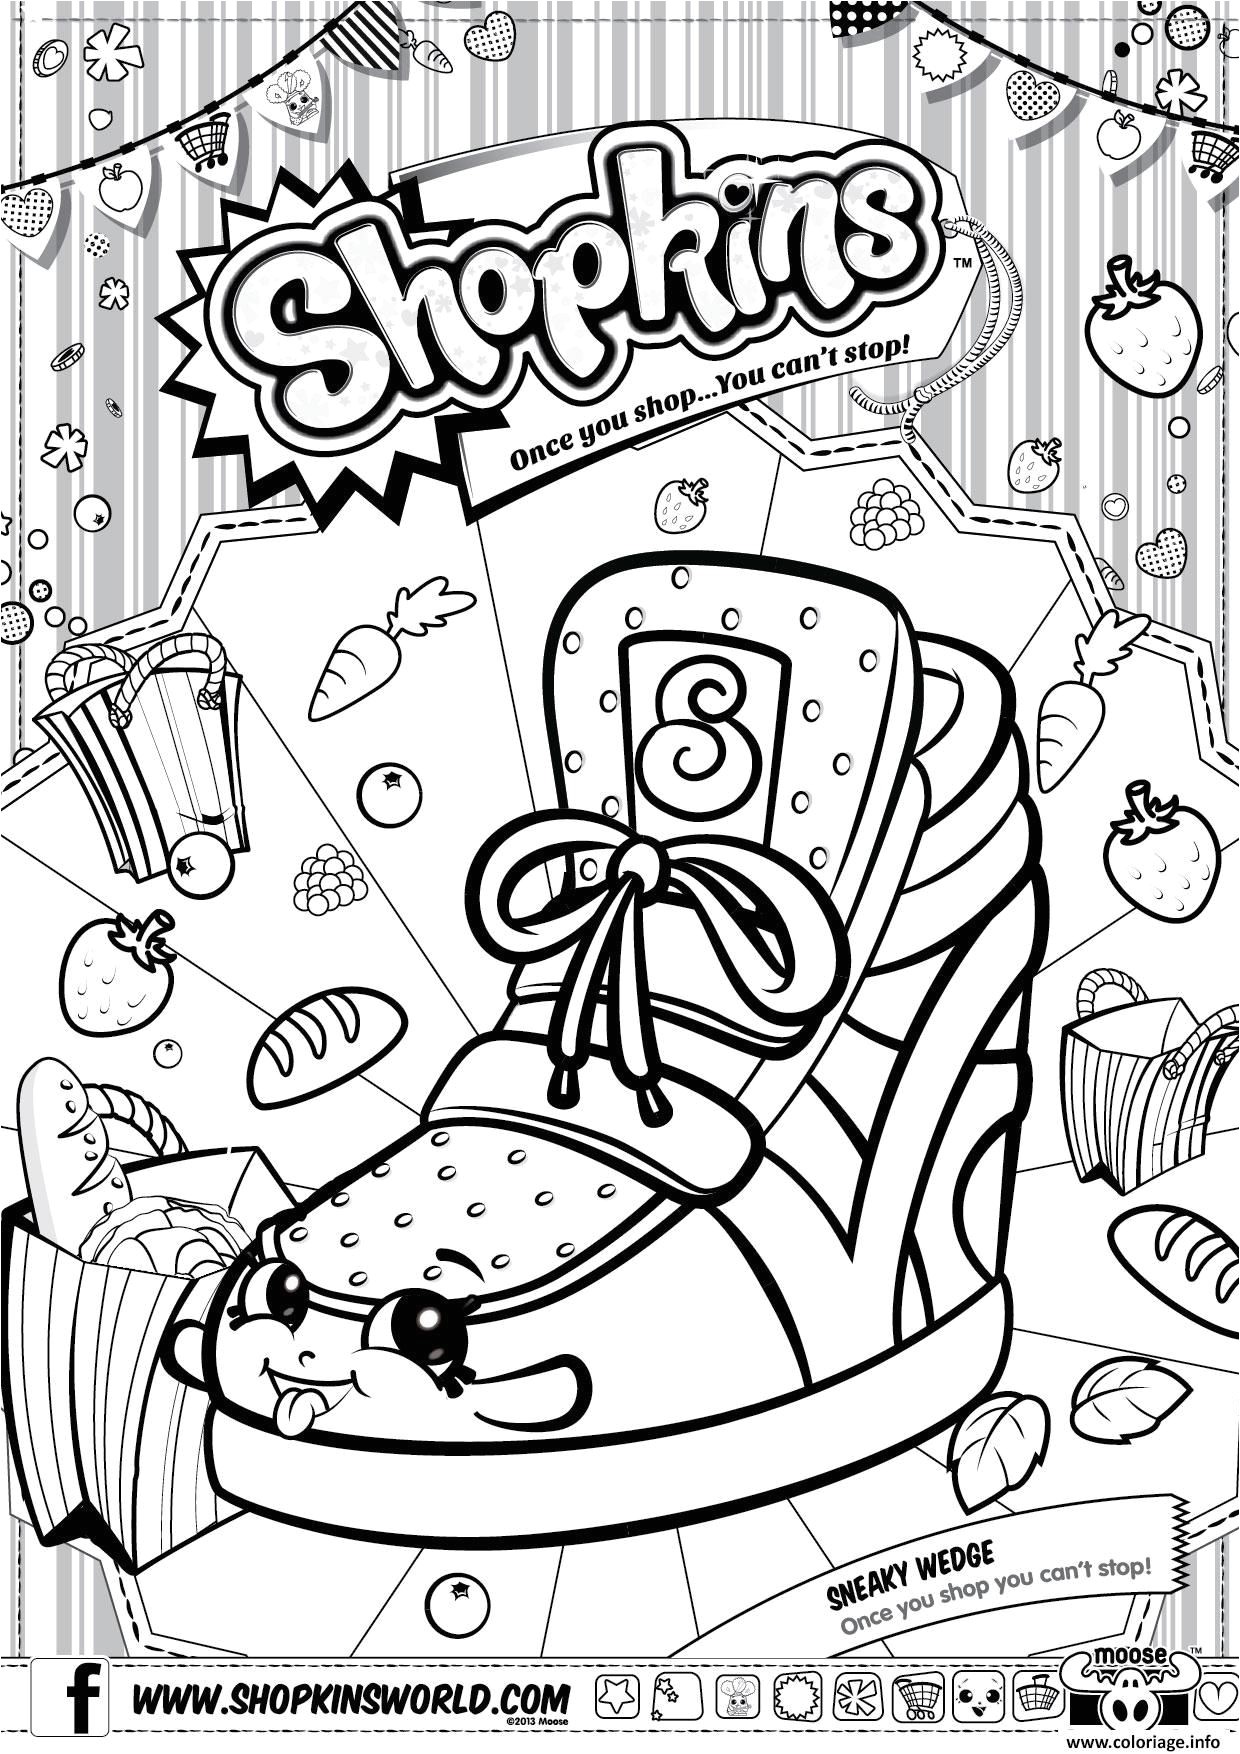 Coloriage shopkins sneaky wedge imprimer et coloriage en ligne pour enfants Dessine les coloriages Shopkins Sneaky